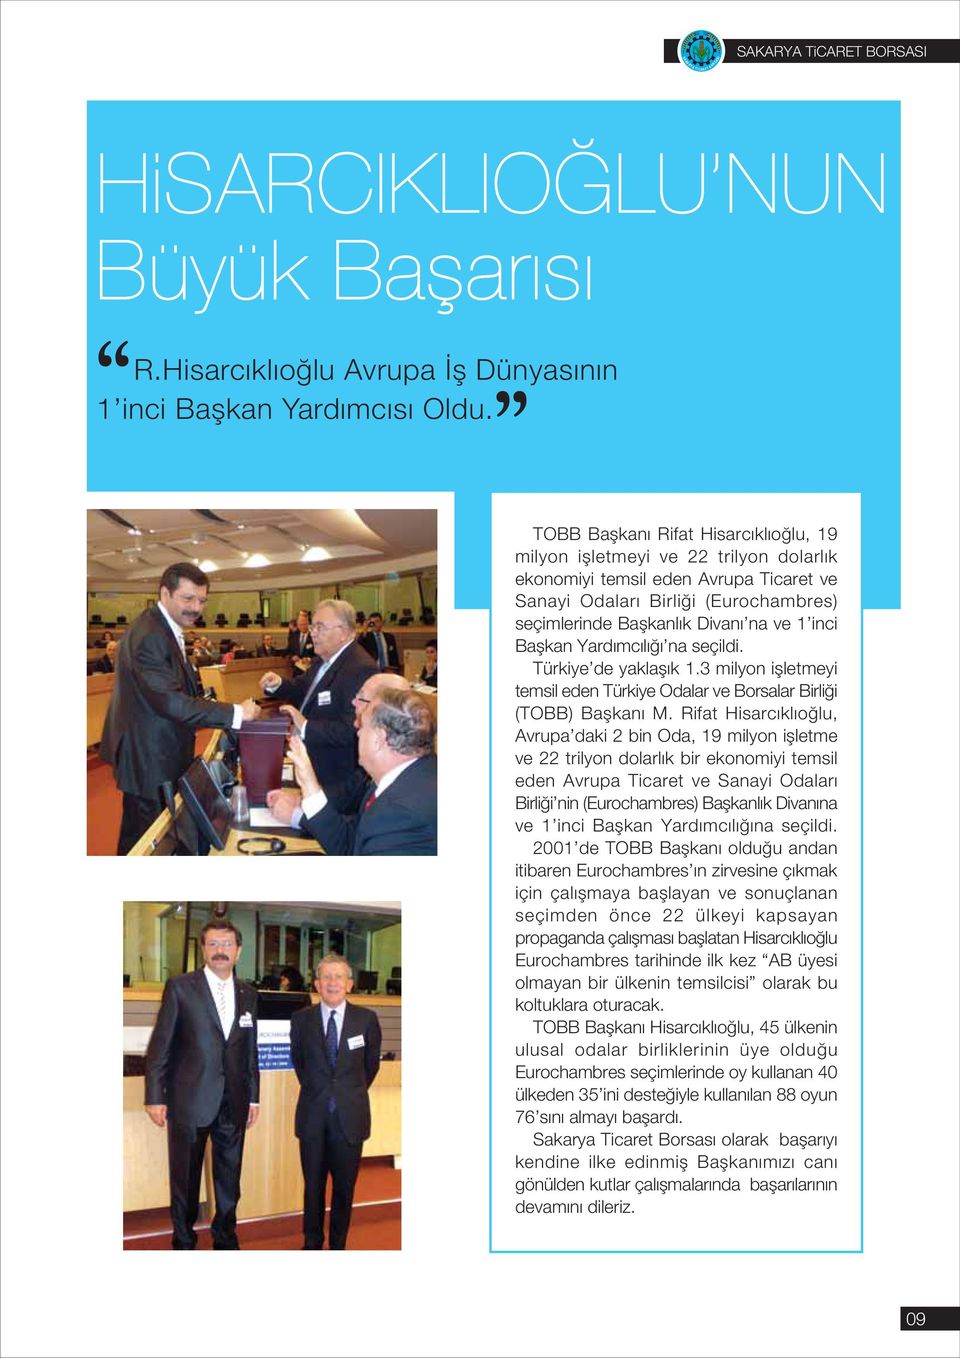 Başkan Yardımcılığı na seçildi. Türkiye de yaklaşık 1.3 milyon işletmeyi temsil eden Türkiye Odalar ve Borsalar Birliği (TOBB) Başkanı M.